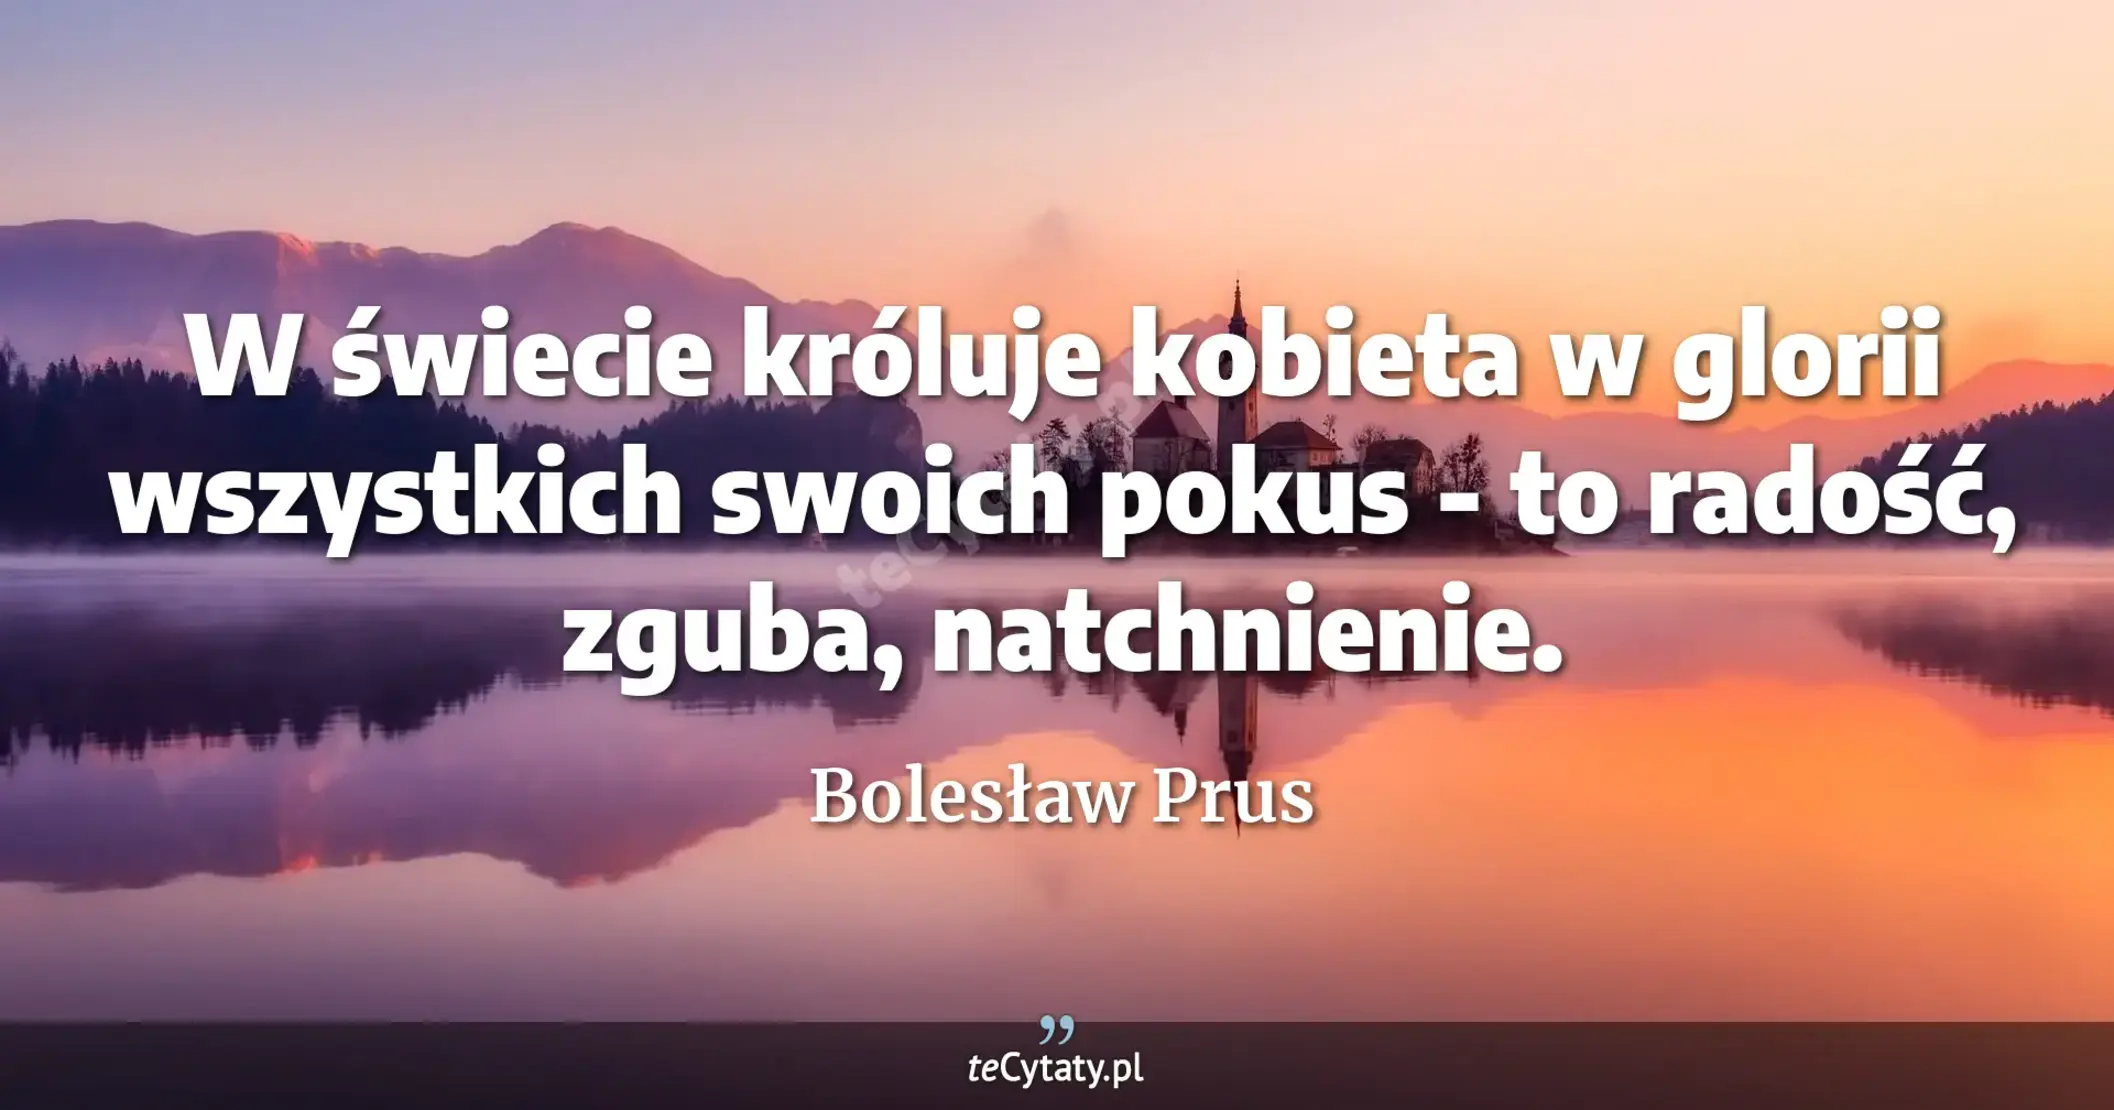 W świecie króluje kobieta w glorii wszystkich swoich pokus - to radość, zguba, natchnienie. - Bolesław Prus